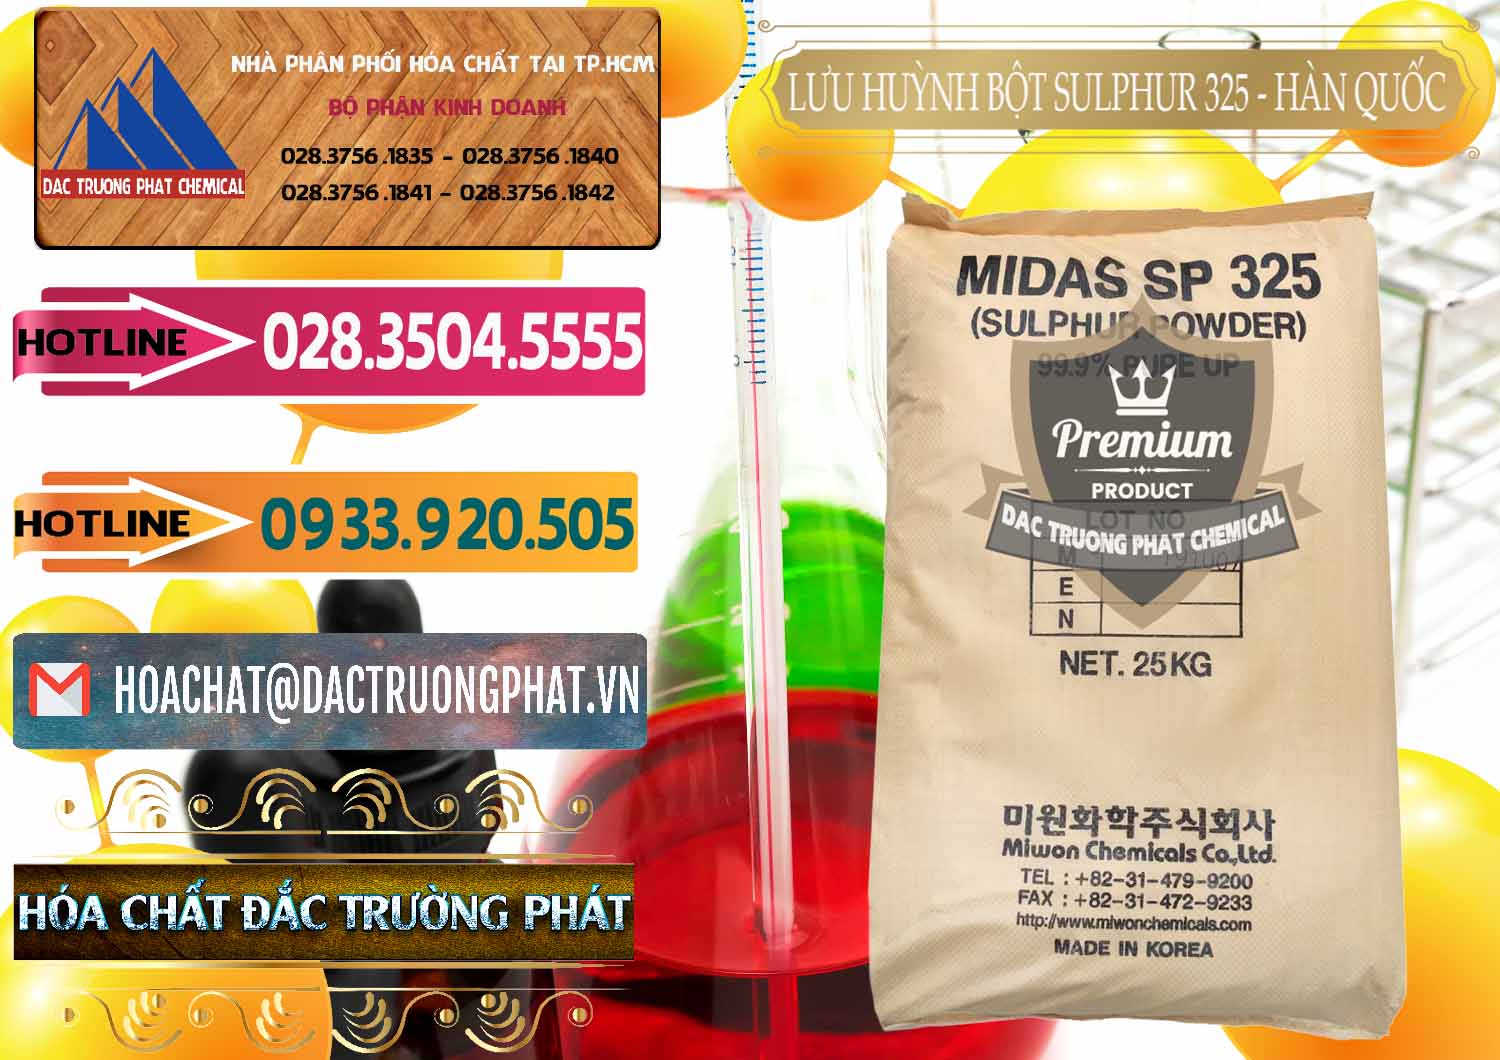 Đơn vị chuyên phân phối - bán Lưu huỳnh Bột - Sulfur Powder Midas SP 325 Hàn Quốc Korea - 0198 - Phân phối & cung cấp hóa chất tại TP.HCM - dactruongphat.vn